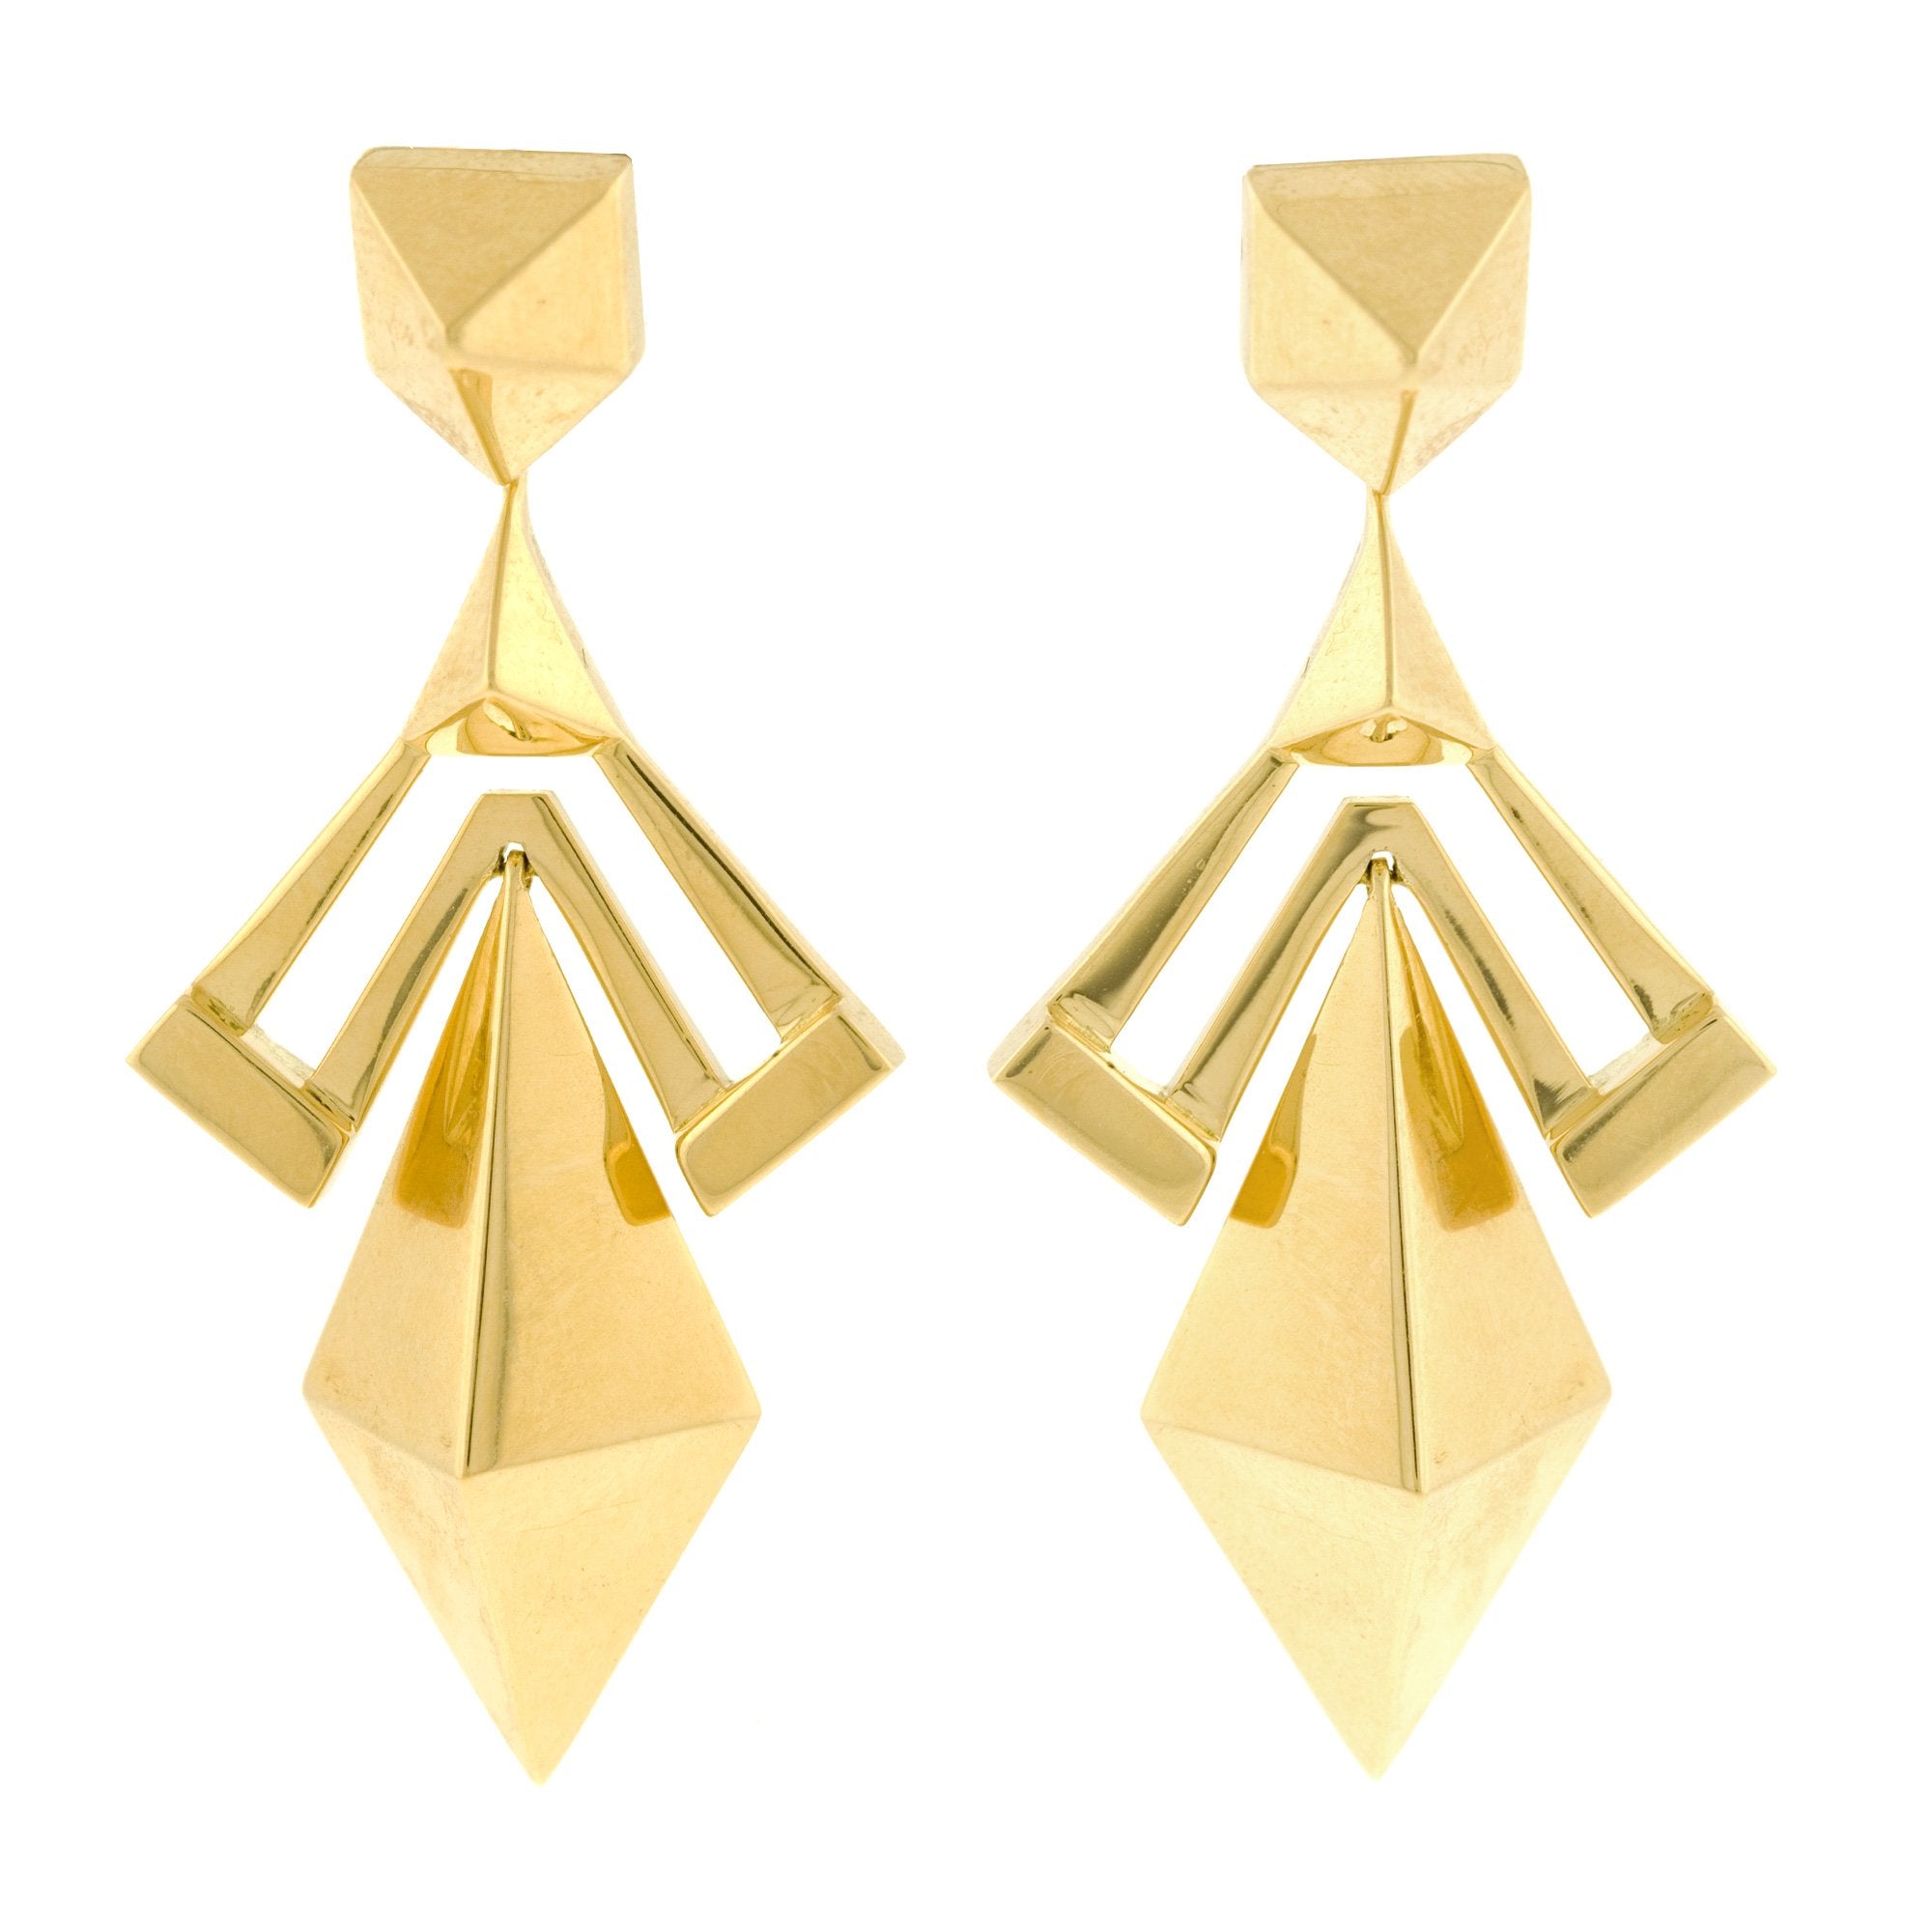 Coco golden earrings - Muar Jewelry